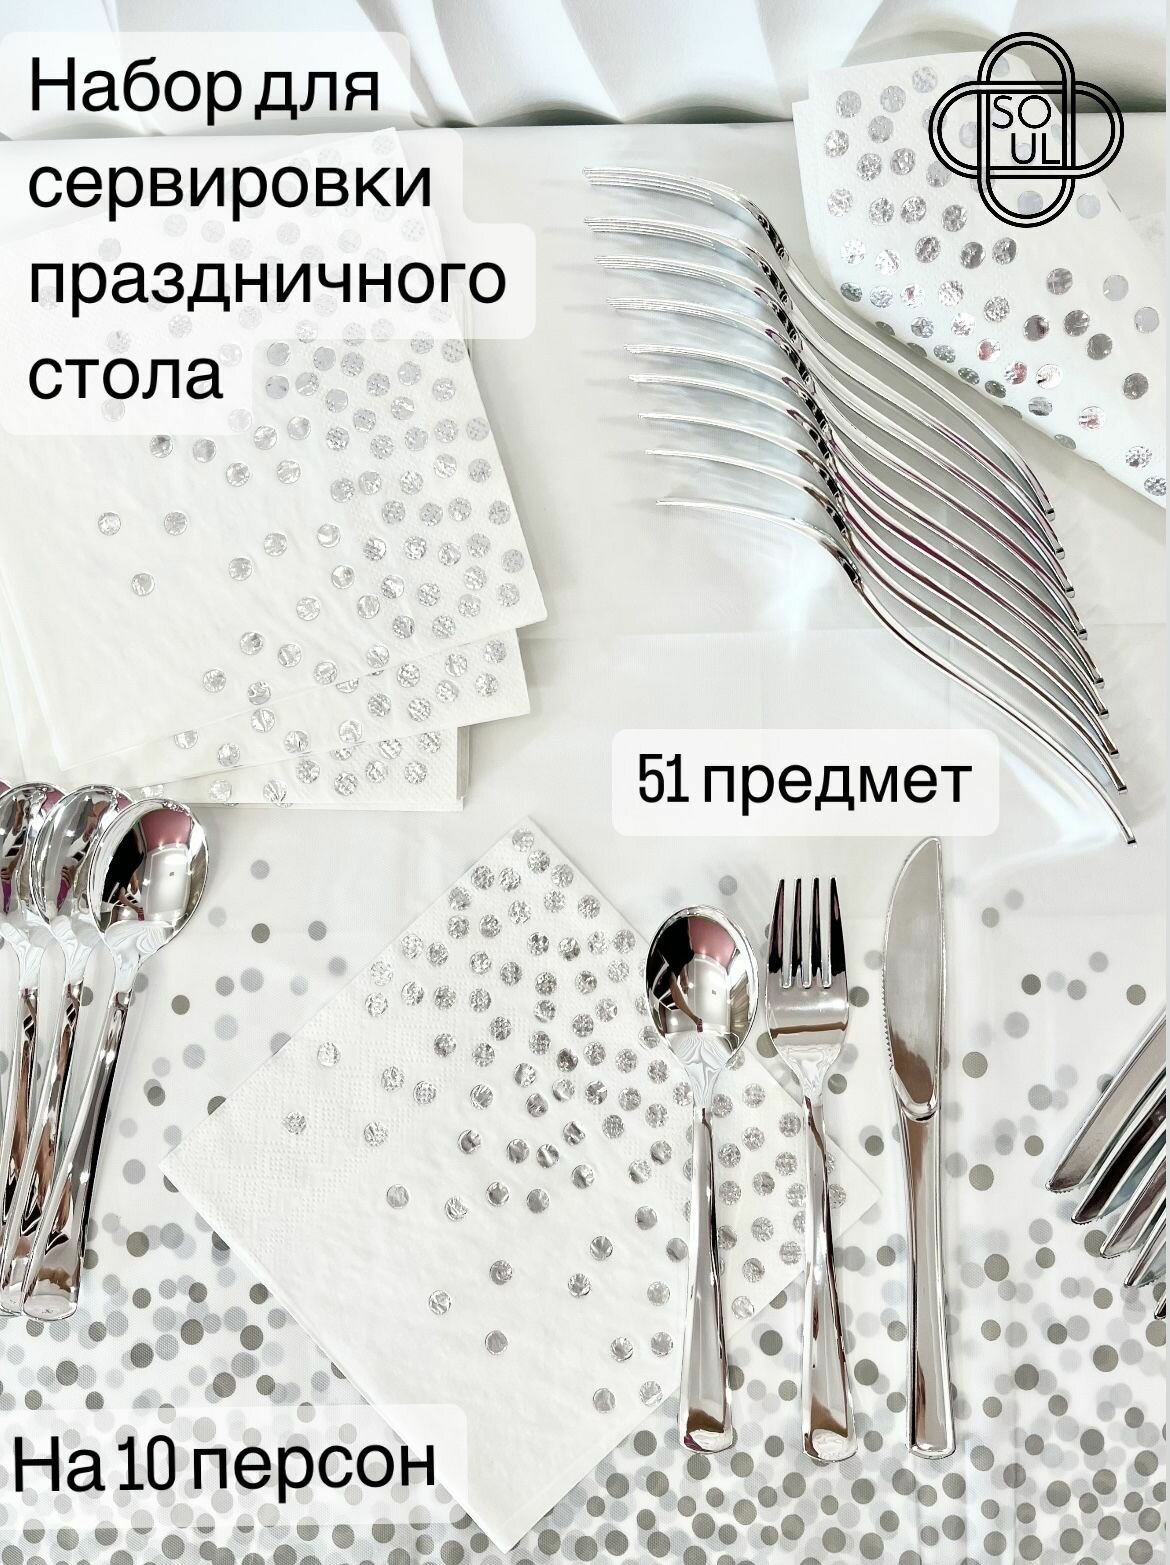 Набор столовых приборов для сервировки праздничного стола "Конфетти" со скатертью и салфеткам